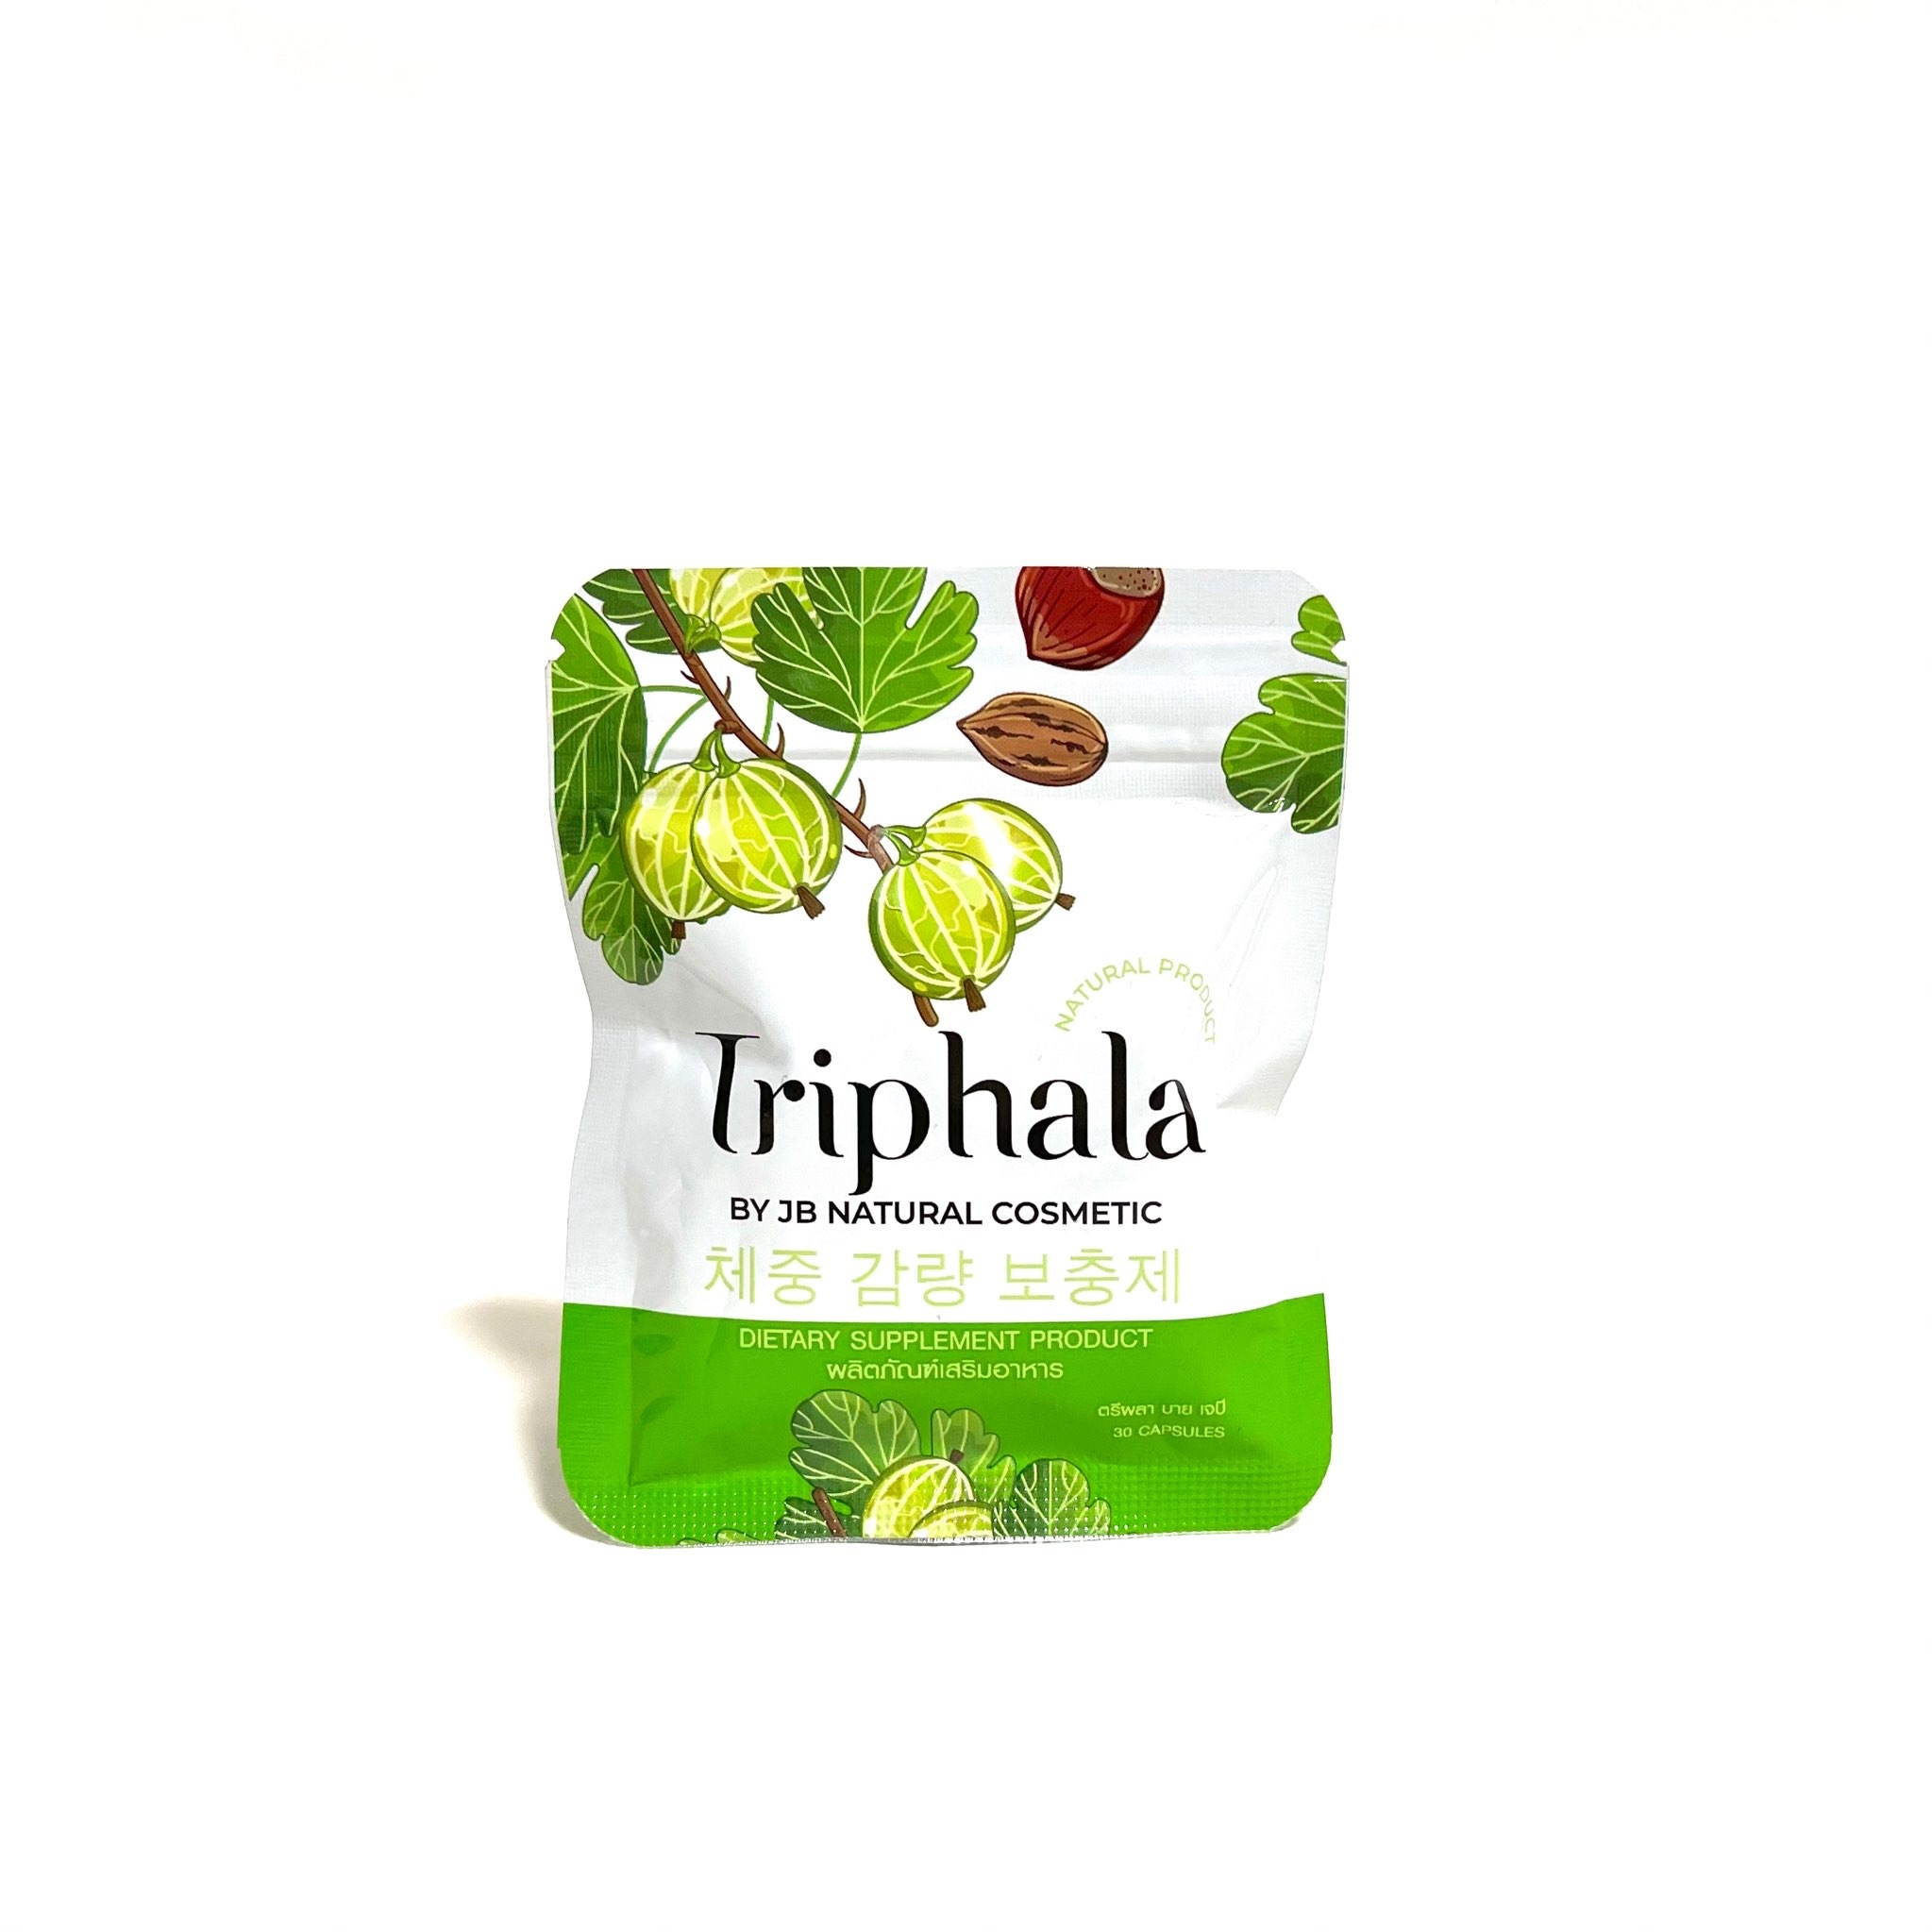 充実の品 Triphala(トリファラ) 高い代謝アップ効果で引き締め さらにお得な3個セット ダイエットサプリメント